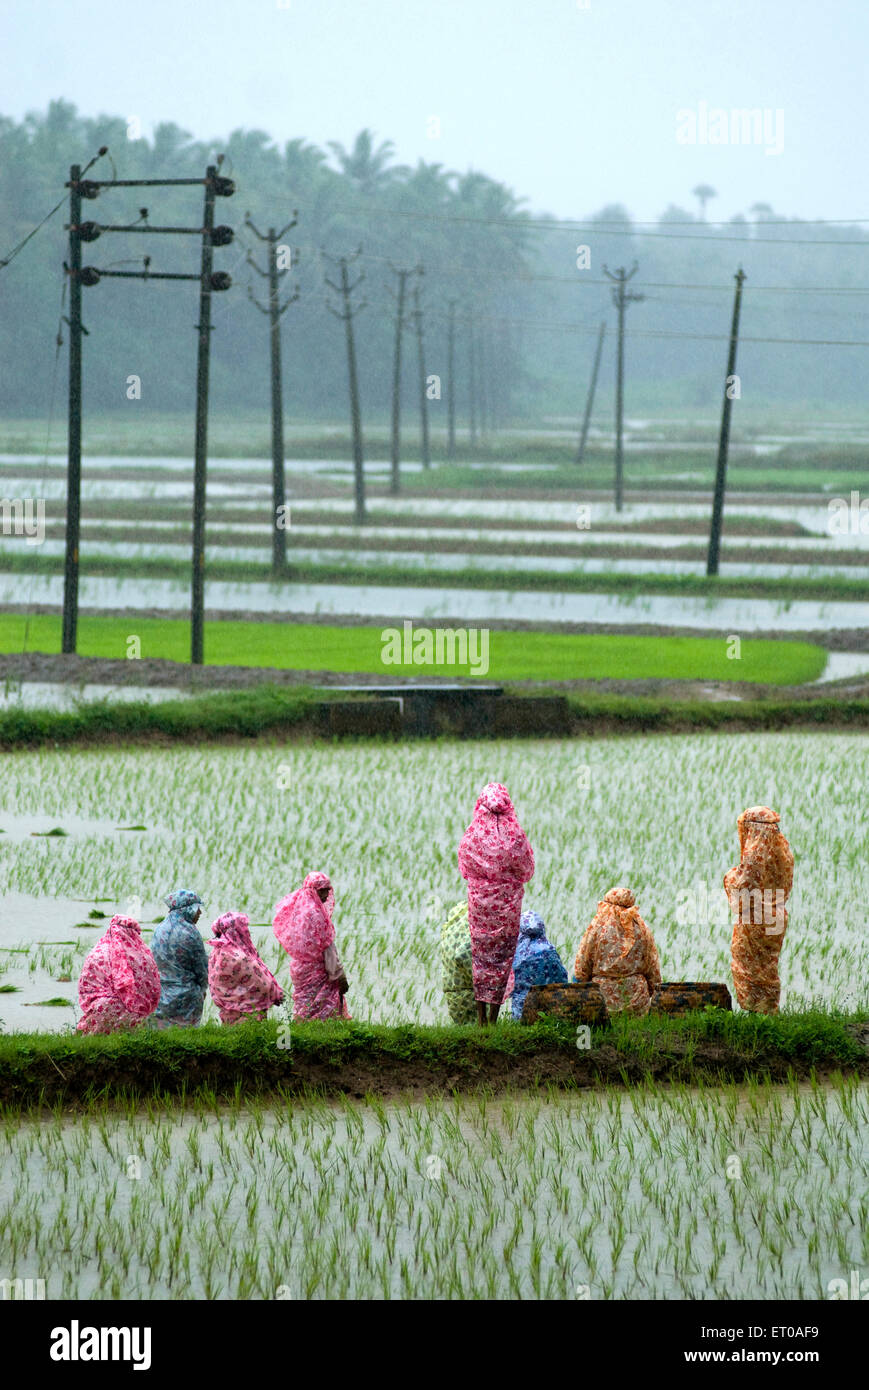 Ouvriers agricoles dans le champ de riz pendant la journée de mousson près de Palakkad Kerala Inde Asie Banque D'Images